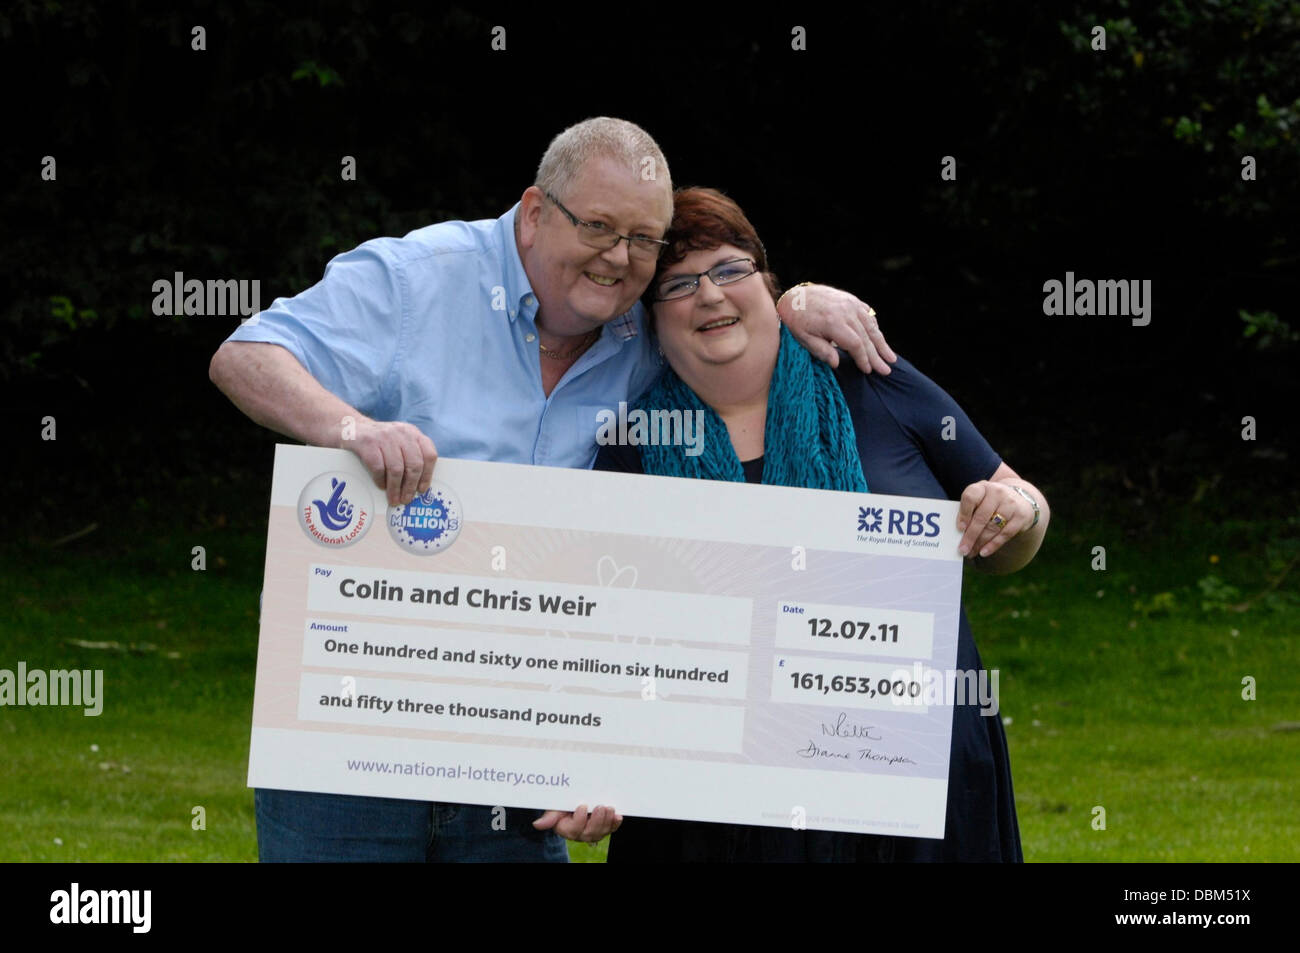 Die £161million EuroMillions Jackpot-Gewinner Colin Weir und Frau Christine  Weir von Largs, in Ayrshire feiern auf einer Pressekonferenz in Falkirk  Falkirk, Schottland - 15.17.11 Stockfotografie - Alamy